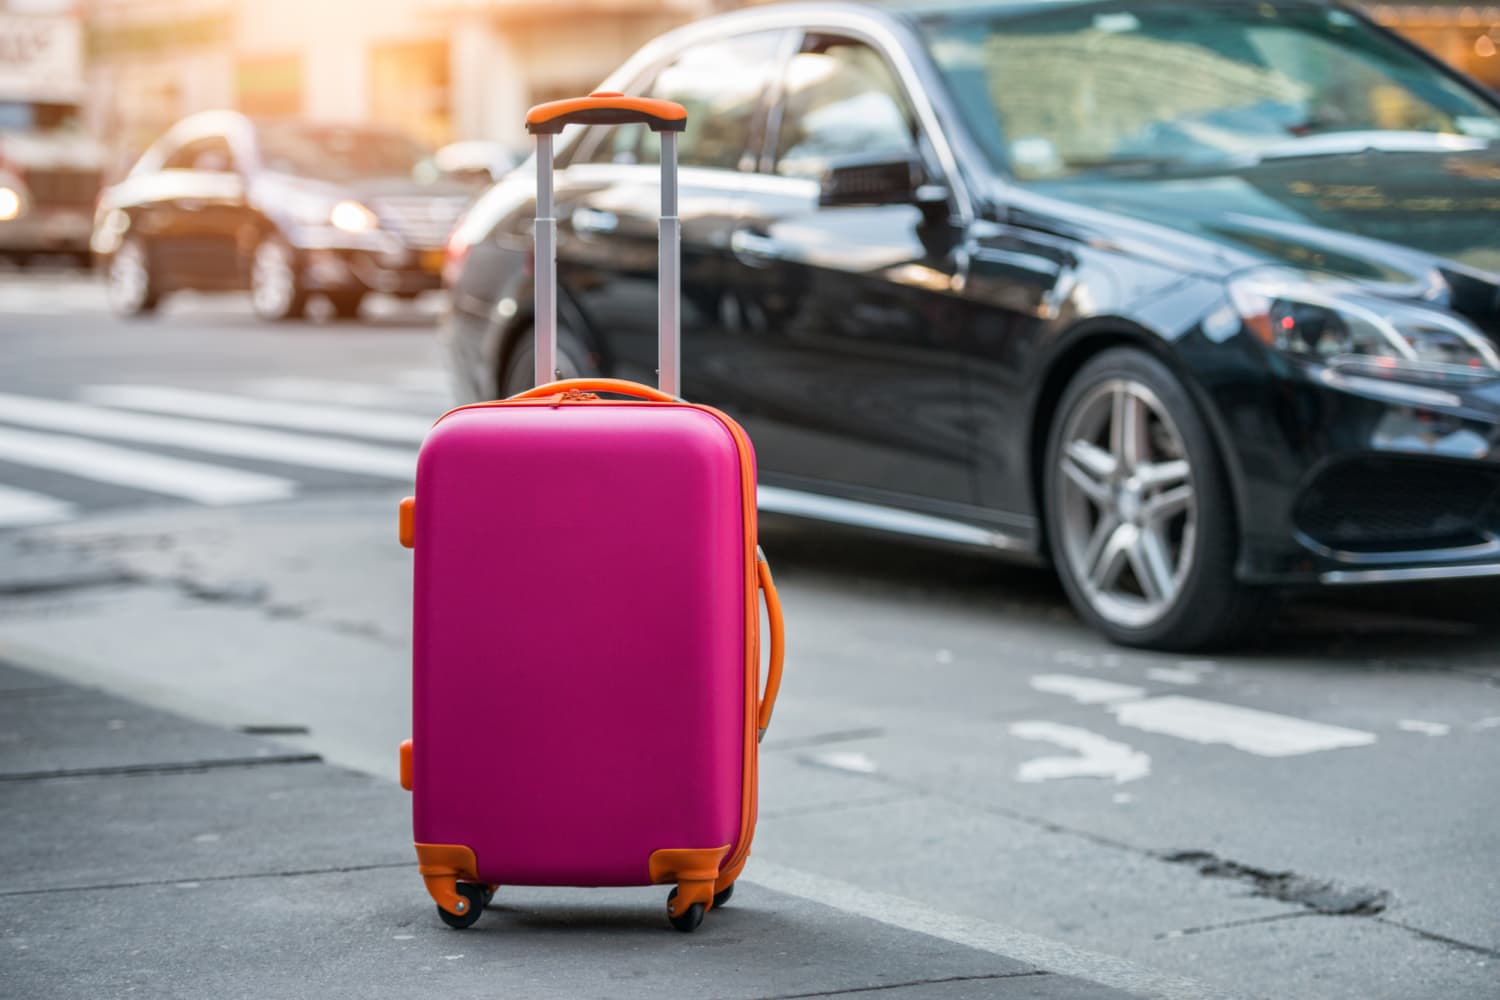 Du betaler sannsynligvis allerede for tapt bagasjeforsikring - her er hva du trenger å vite